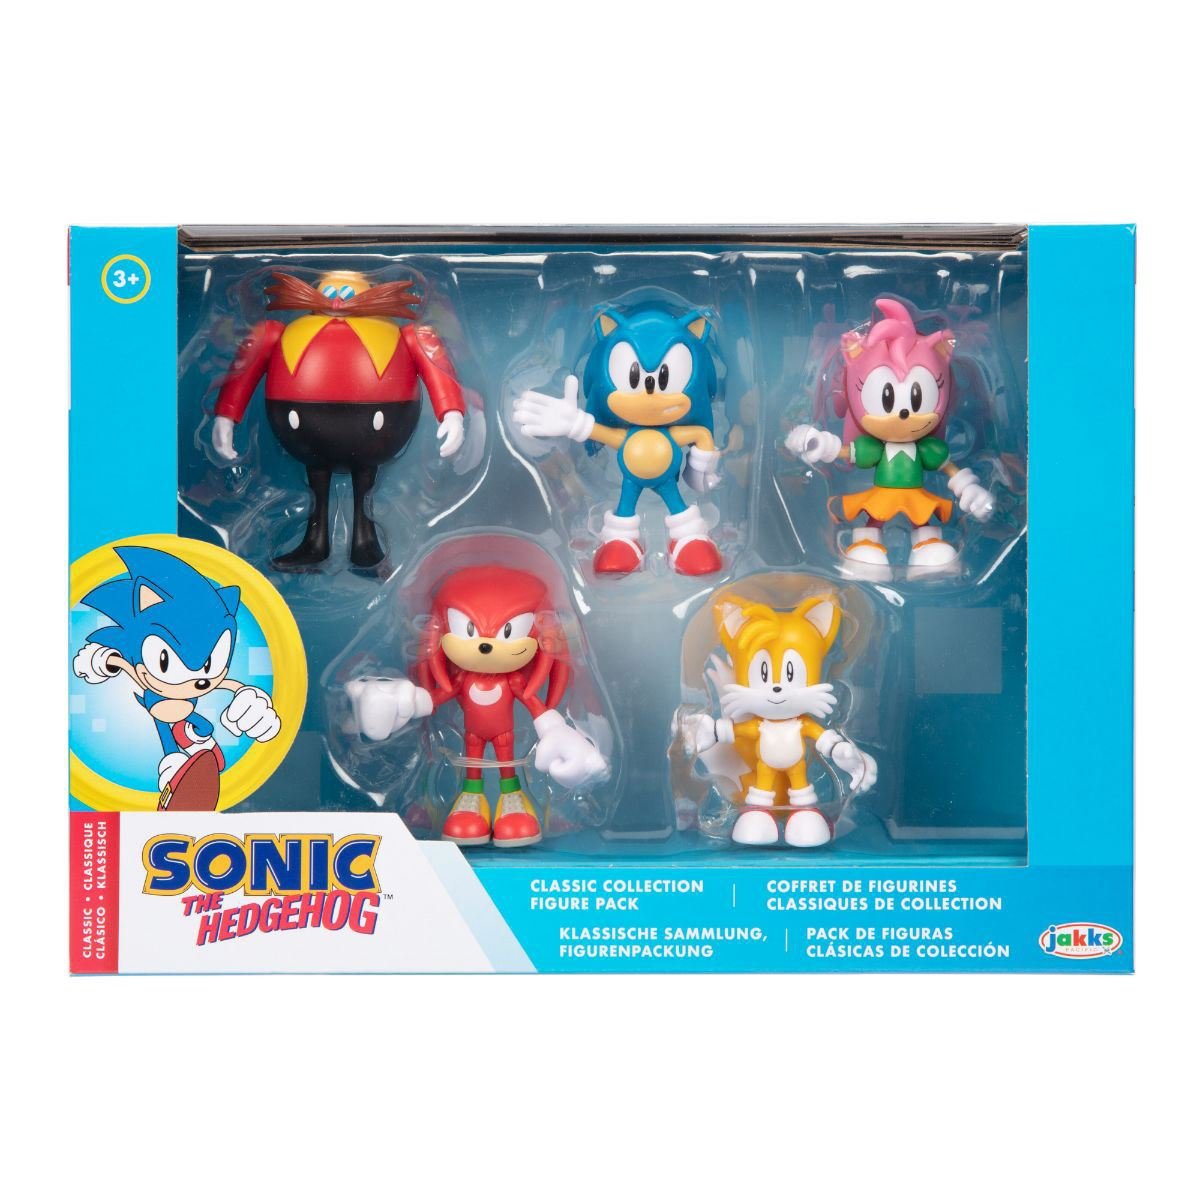 Sonic The Hedgehog Figura de acción clásica de Sonic de 2.5 pulgadas con  juguete coleccionable de Hot Dog